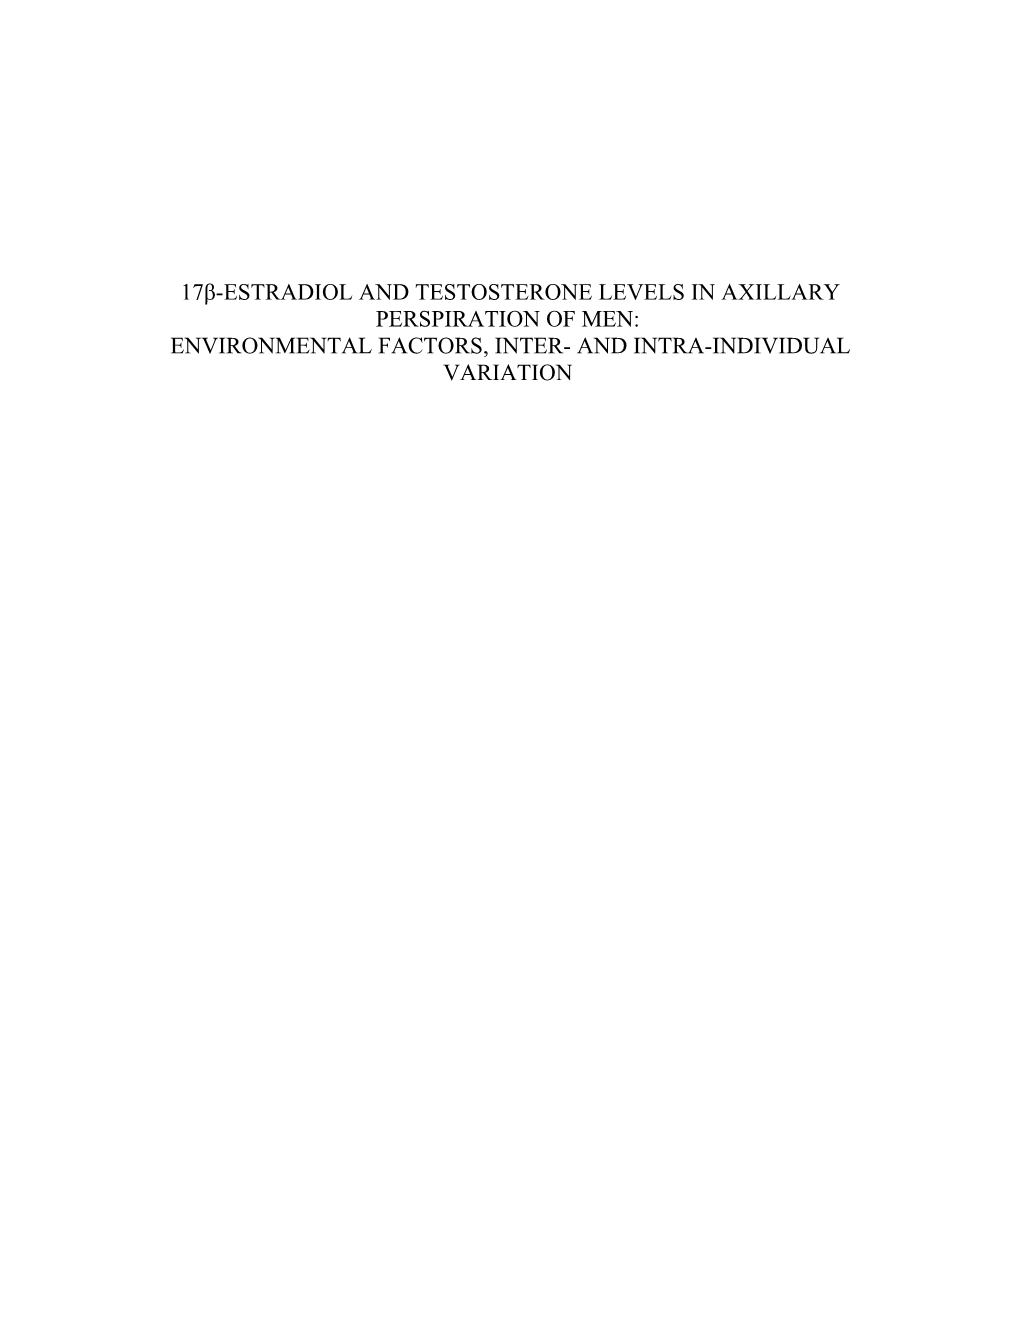 17Β-Estradiol and Testosterone Levels in Axillary Perspiration of Men: Environmental Factors